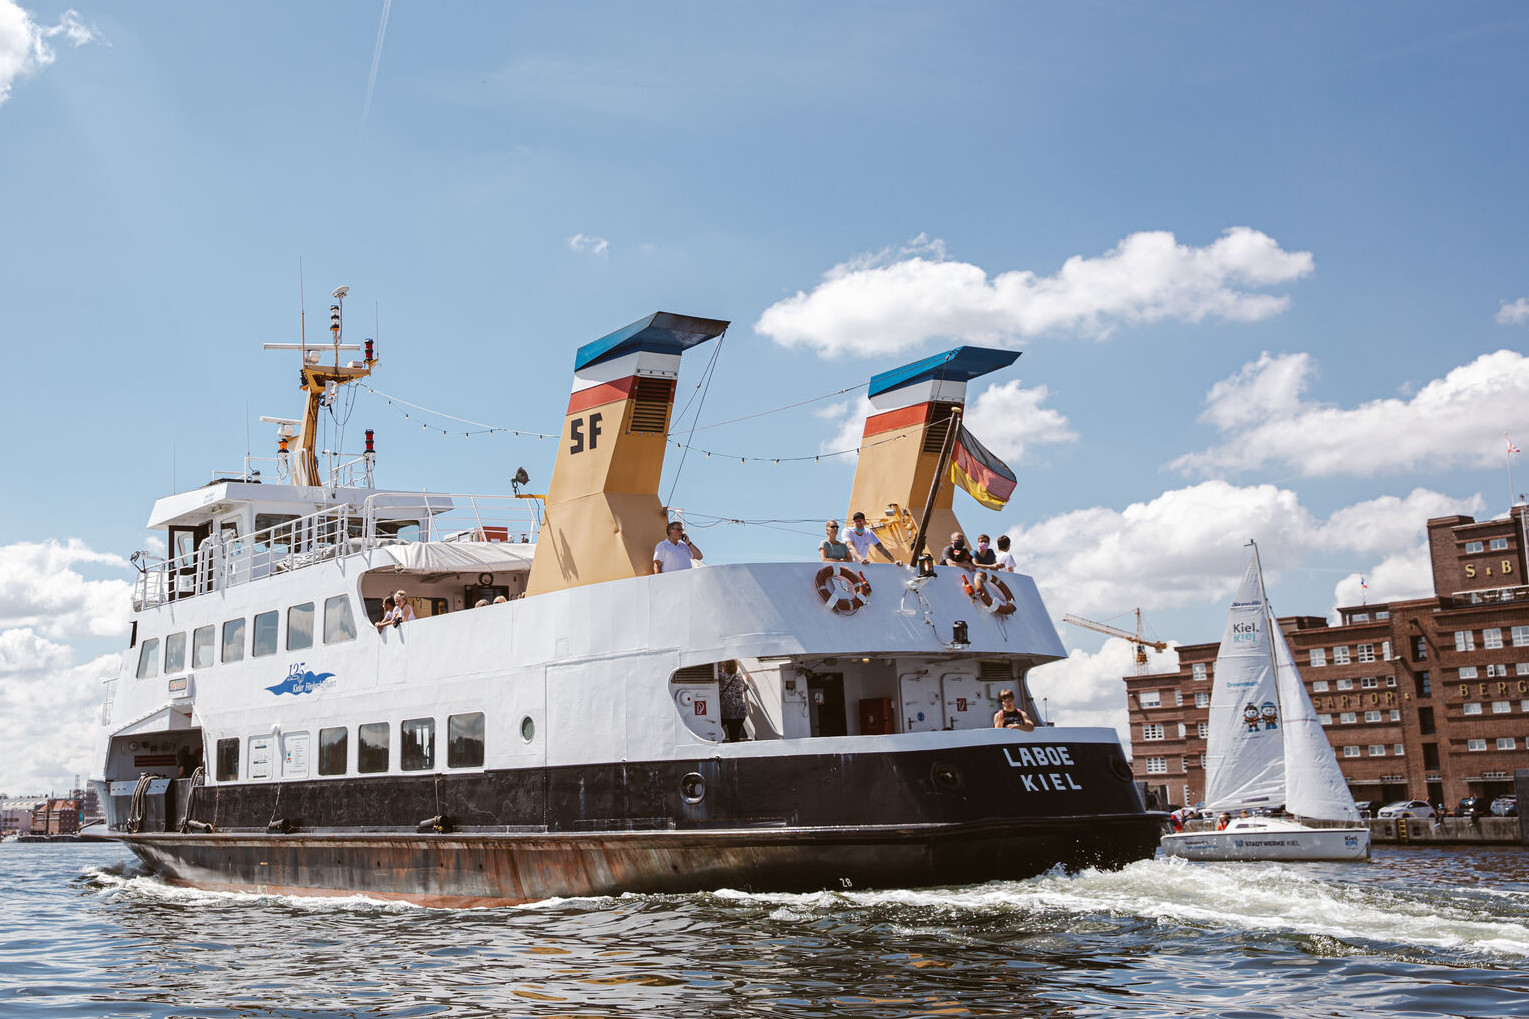  <a href="/kieler-foerde-entdecken/sightseeing/hafenrundfahrt">Erleben Sie die Kieler Förde auf dem Wasser während einer Hafenrundfahrt!</a>